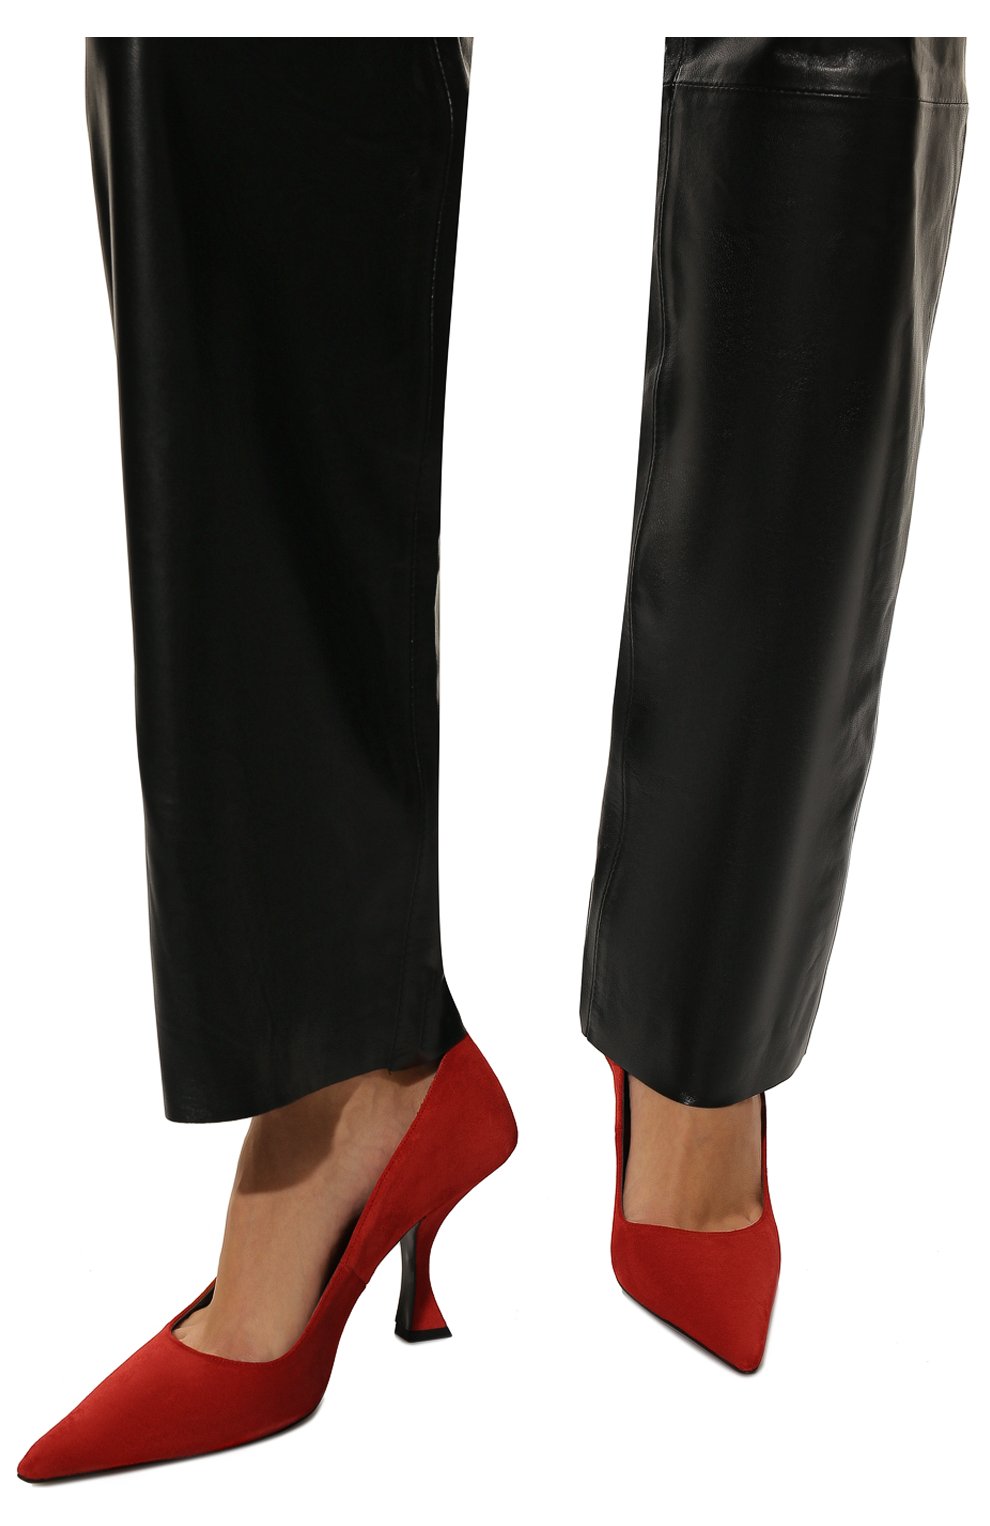 Женские замшевые туфли viva BY FAR красного цвета, арт. 22PFVIVPMU | Фото 3 (Материал внешний: Кожа, Замша; Материал внутренний: Натуральная кожа; Каблук высота: Средний; Каблук тип: Шпилька)